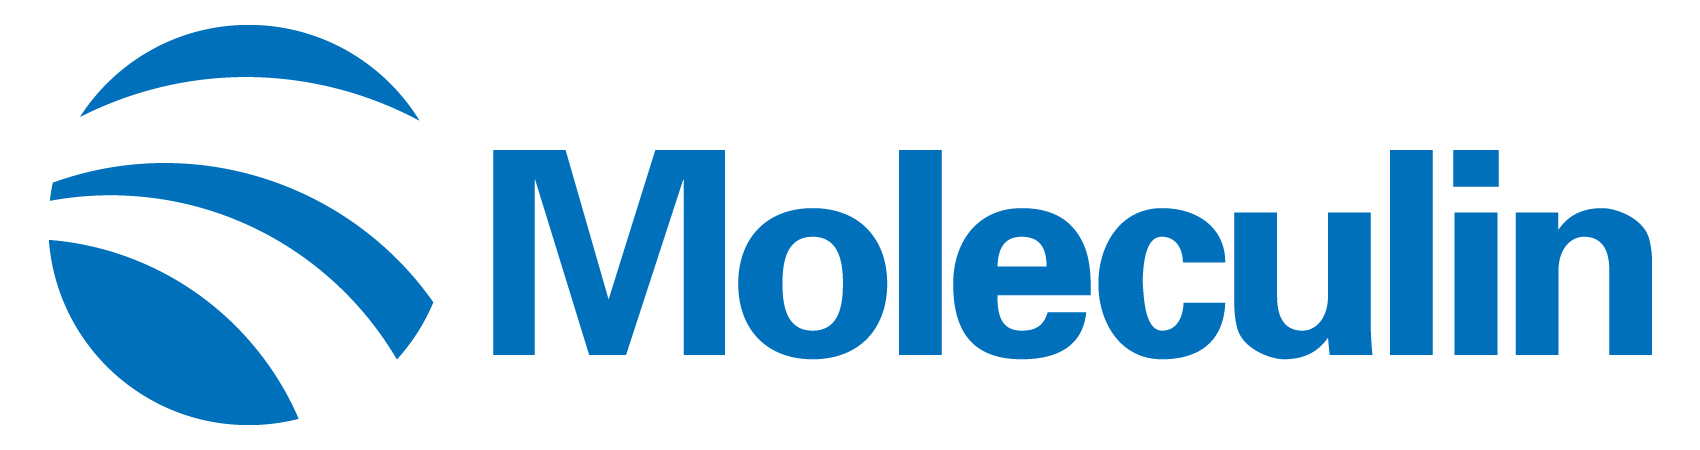 moleculin-logo_horiza27.jpg